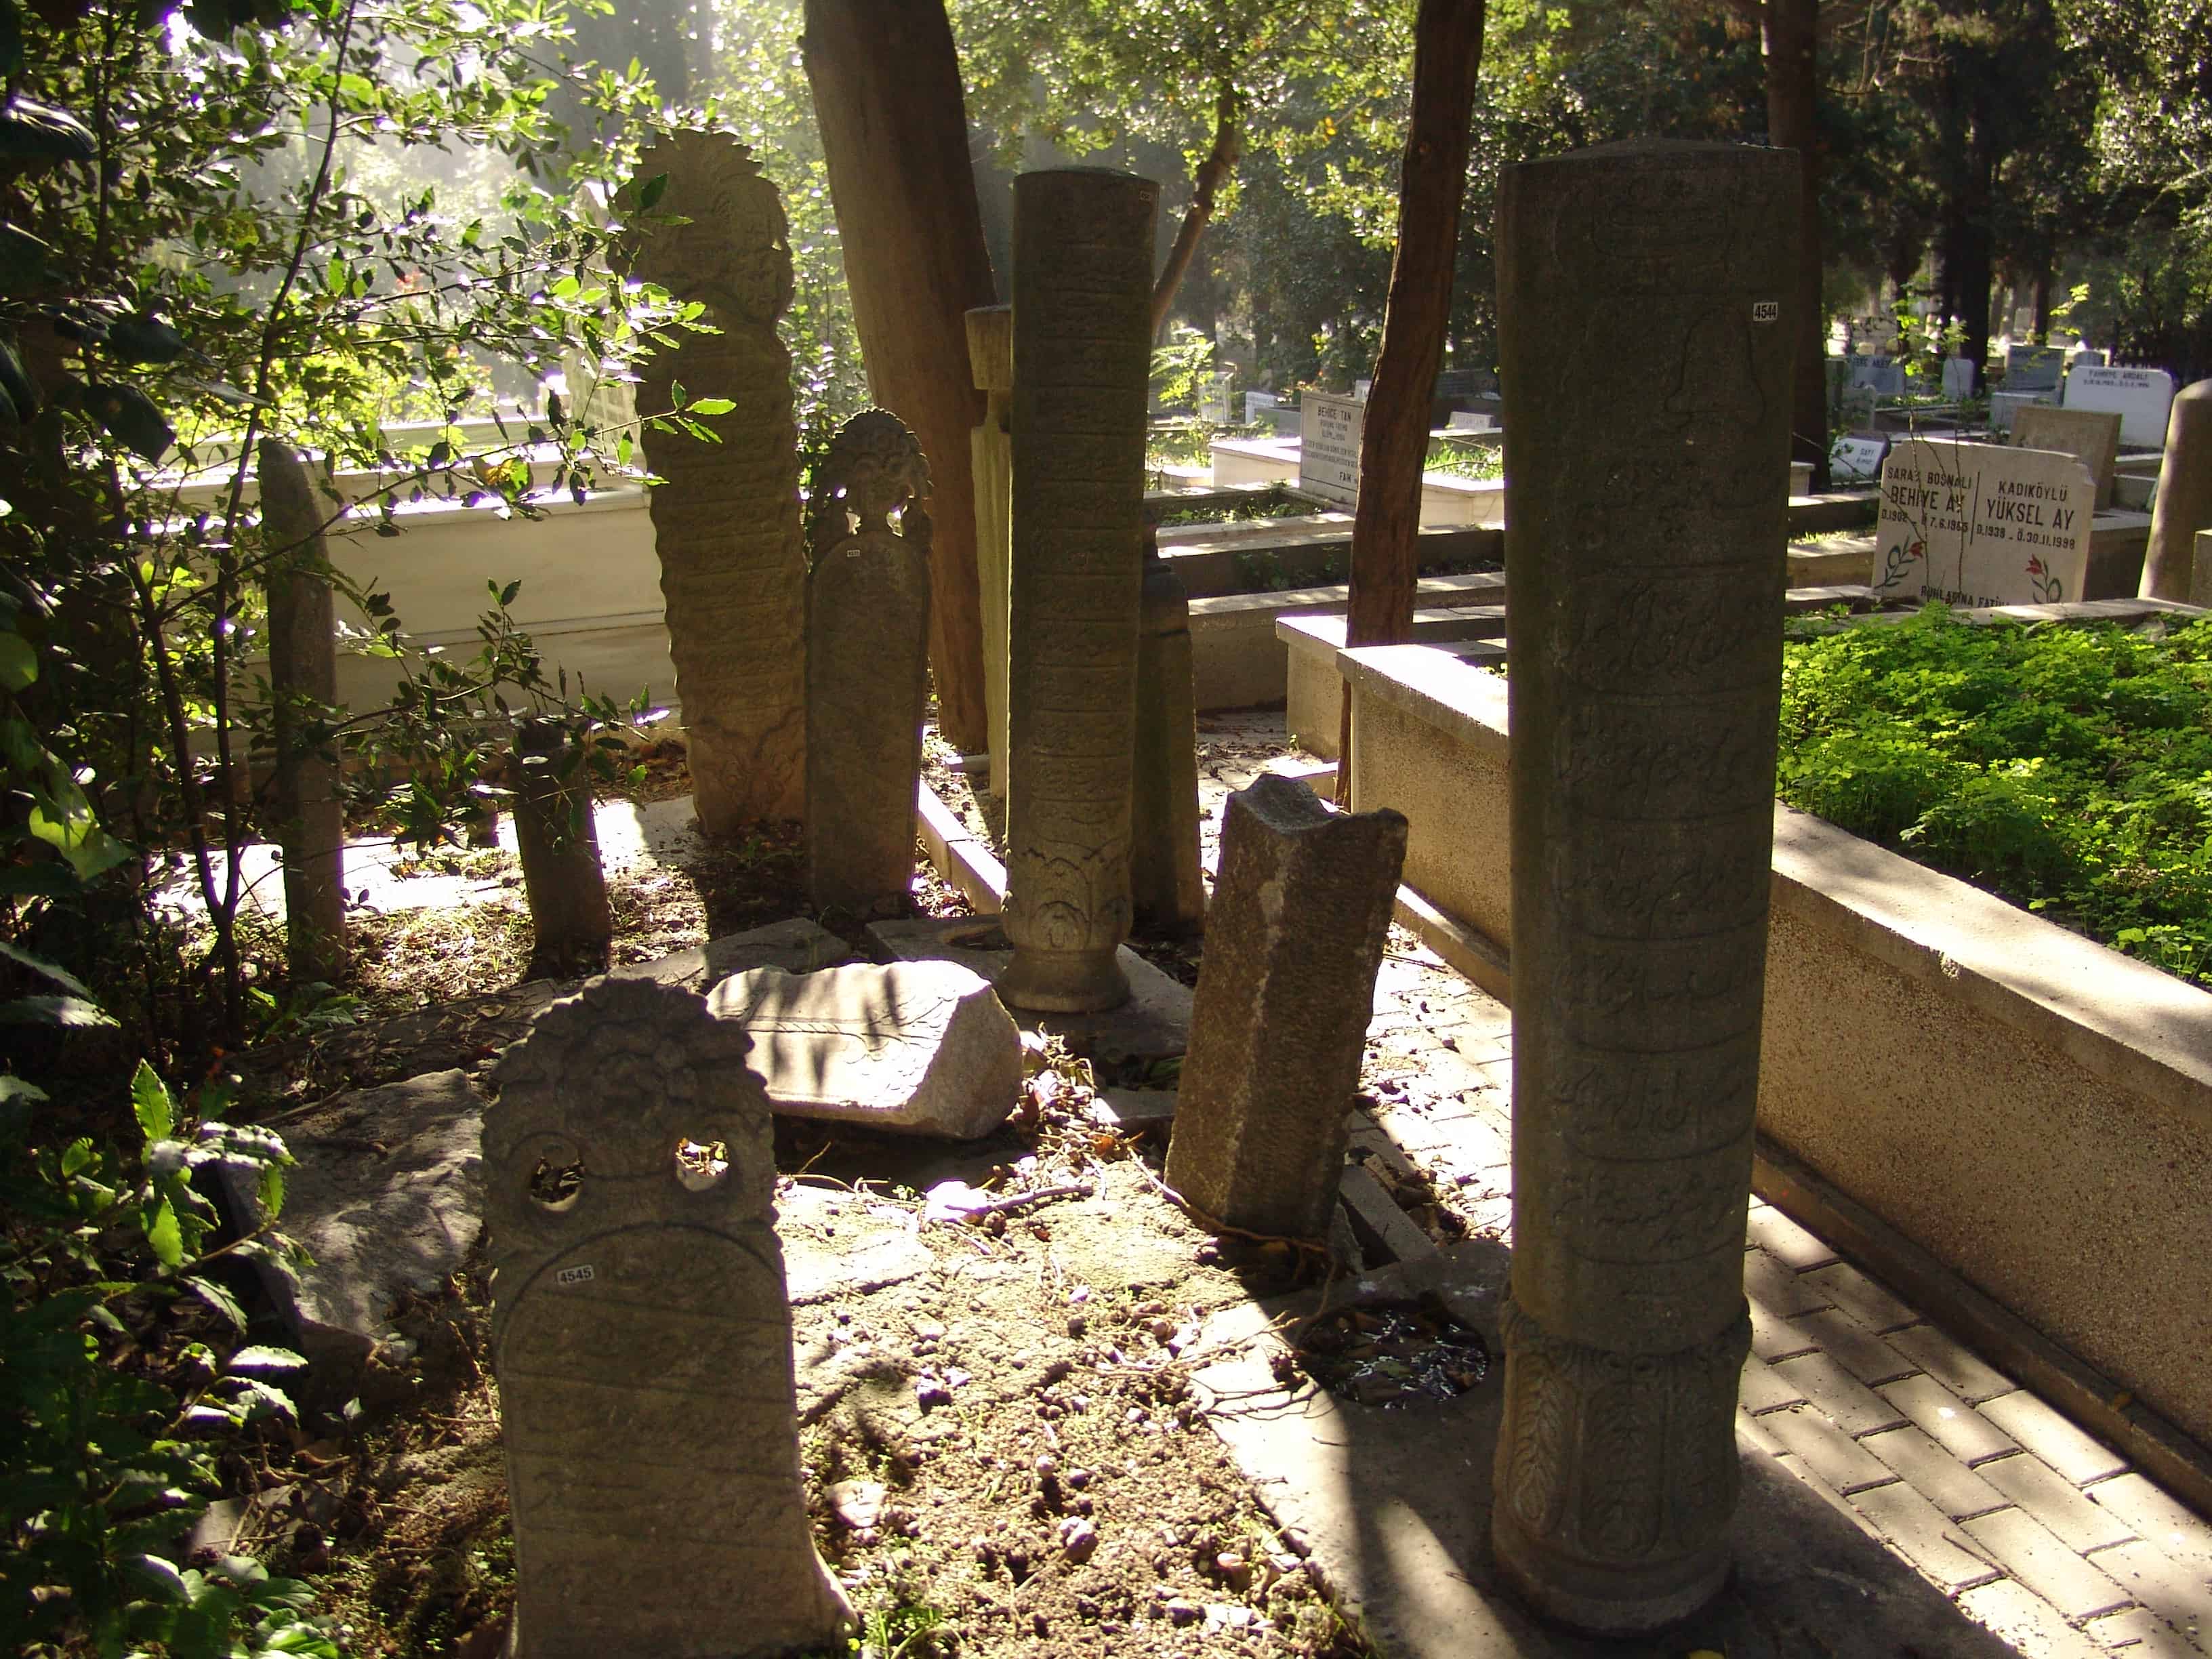 Karacaahmet Mezarlığı in Üsküdar, Istanbul, Turkey